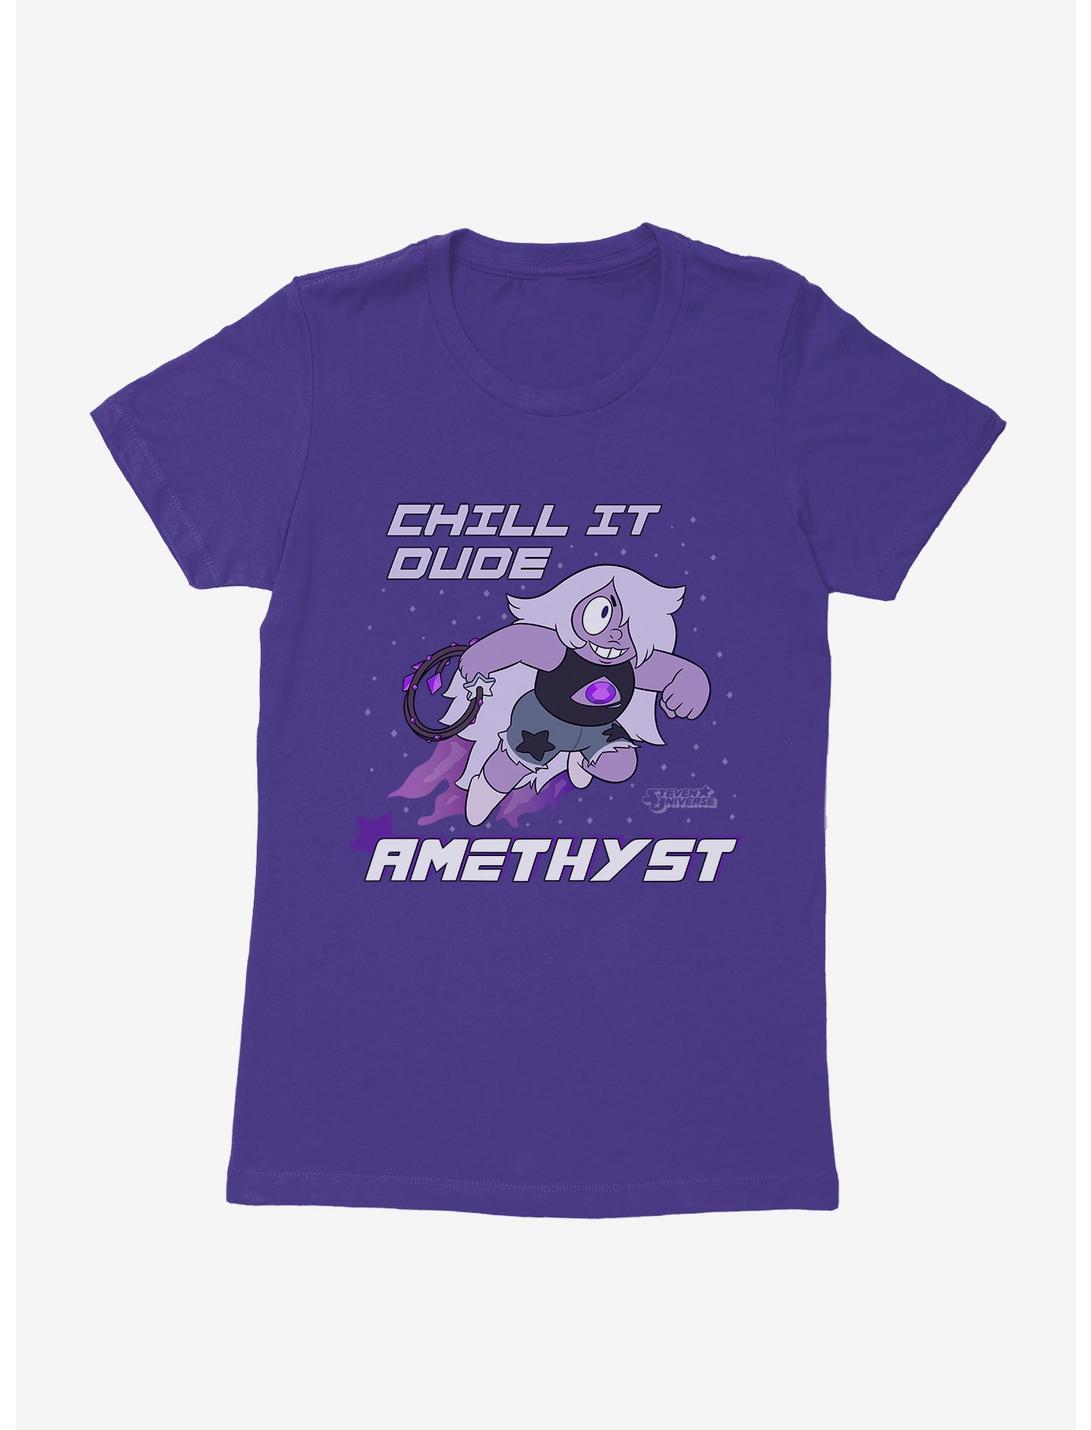 Steven Universe Amethyst Womens T-Shirt, , hi-res